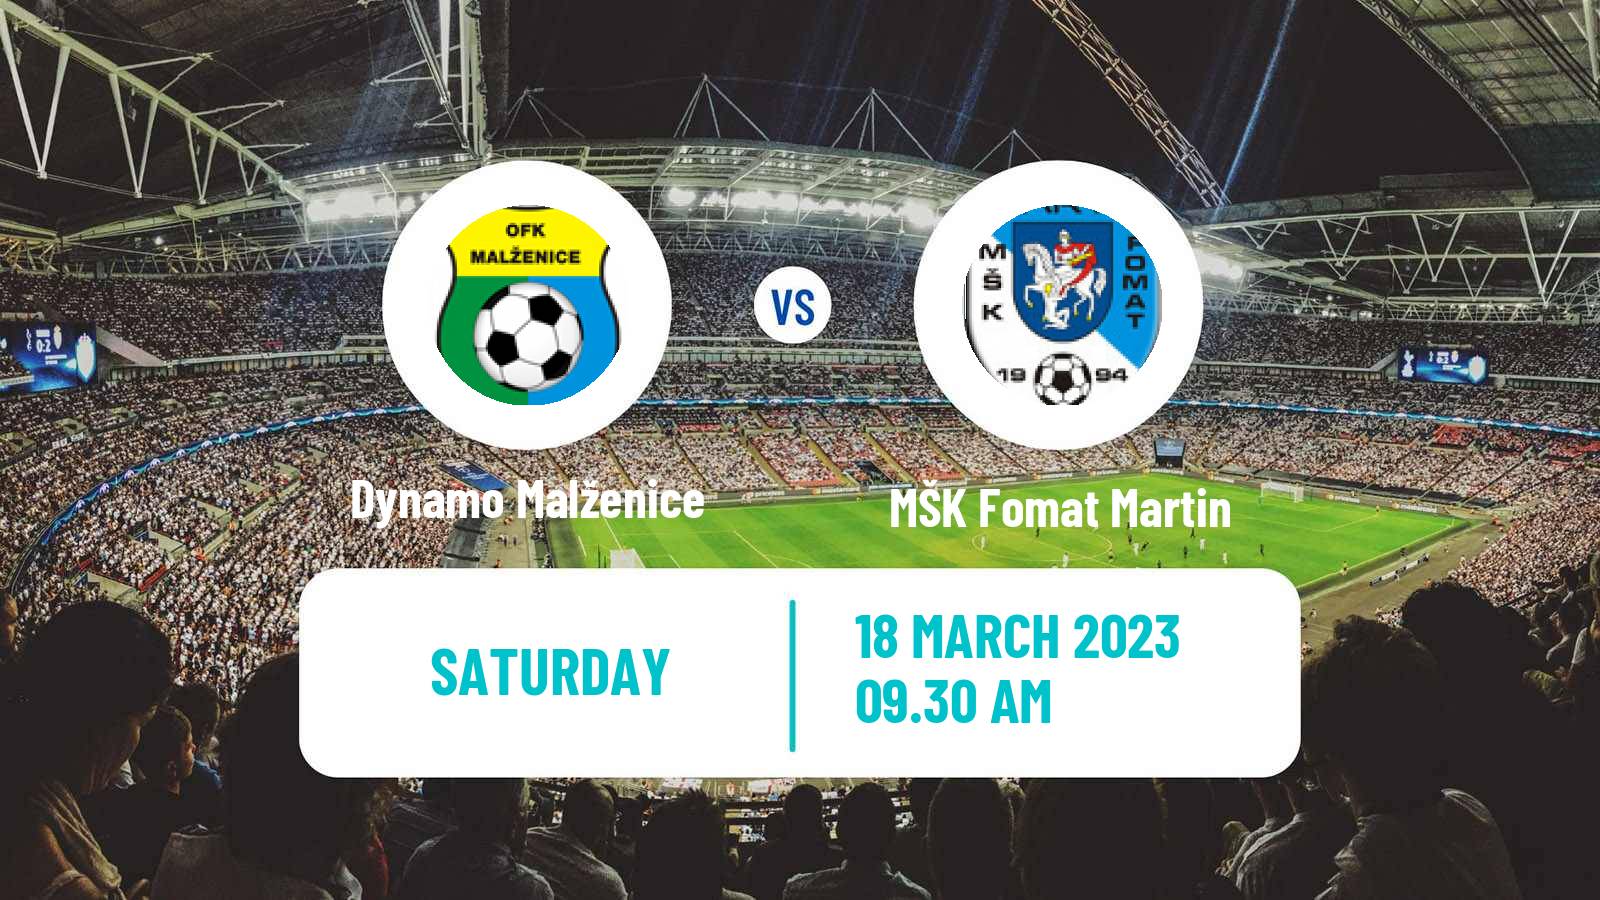 Soccer Slovak 3 Liga West Dynamo Malženice - MŠK Fomat Martin